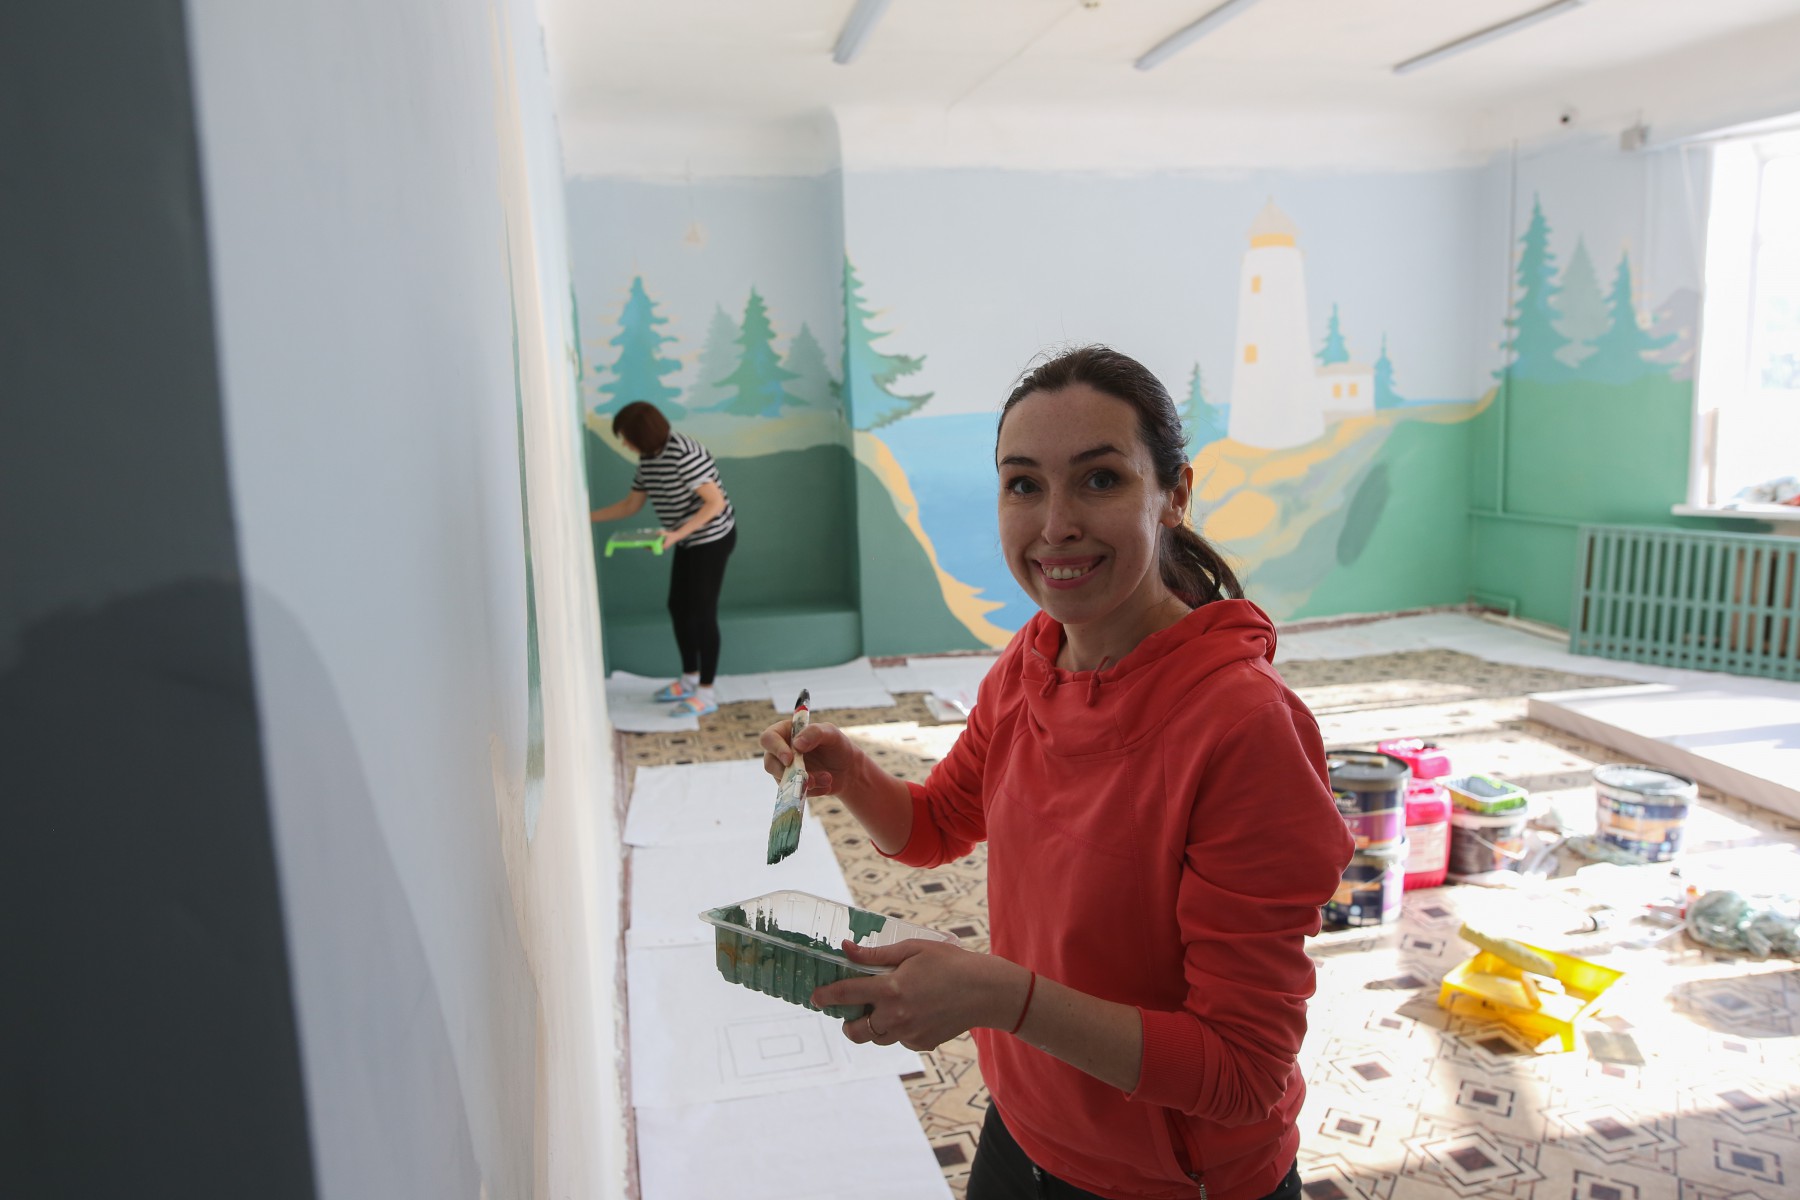 Эскизы переносила на стены художница Елена Вепринцева. Вместе с другими волонтёрами она помогает залу адаптивной физкультуры преображаться. 